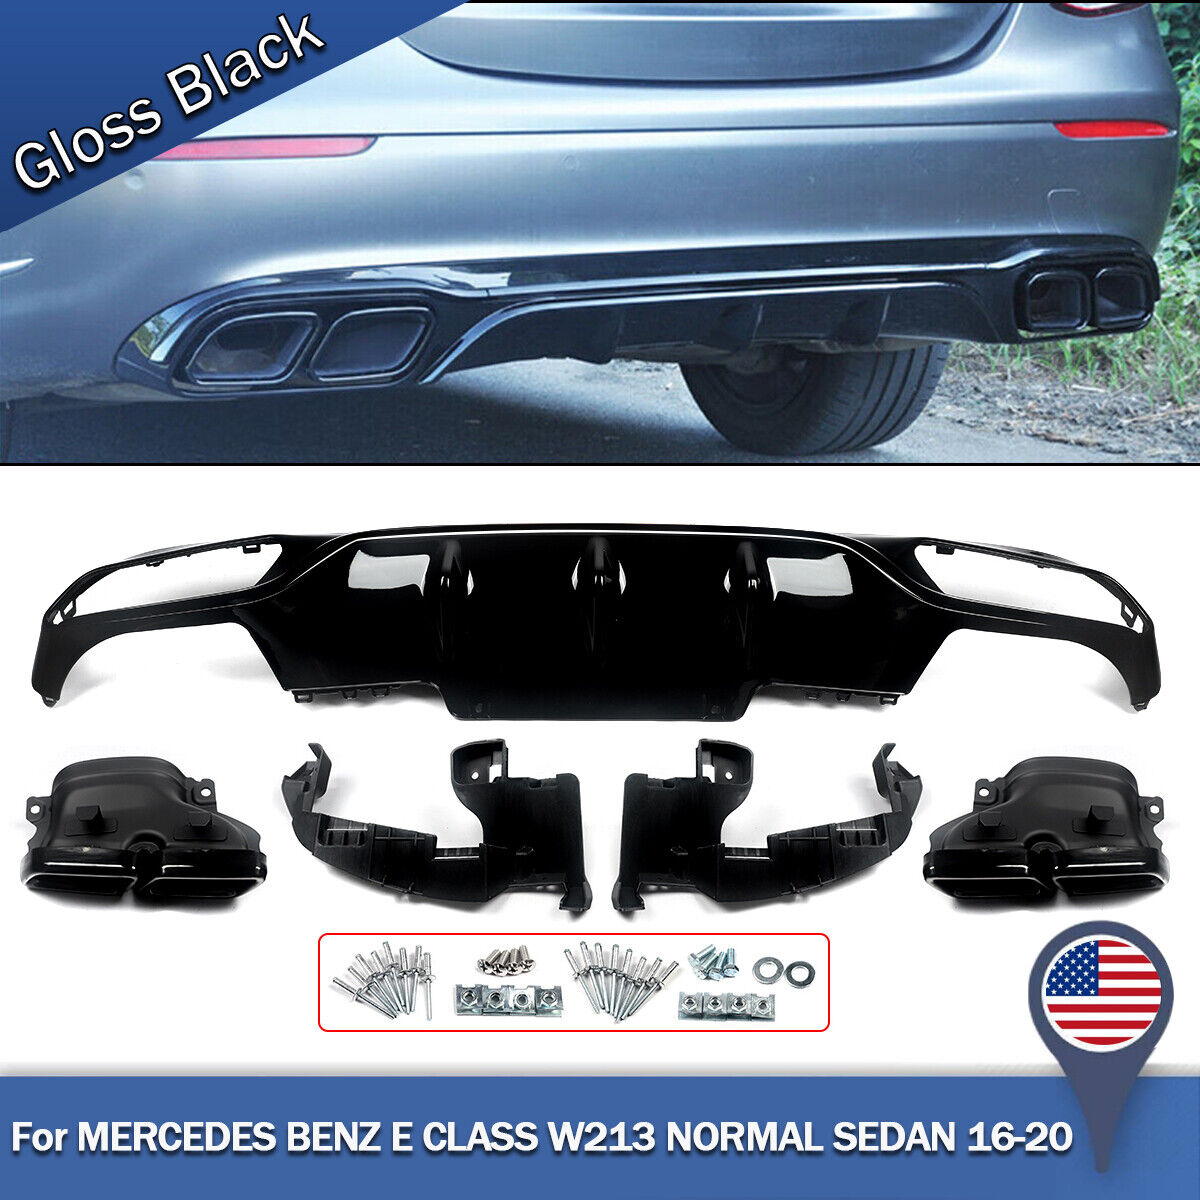 For 16-20 Mercedes Benz E Class W213 Standard Bumper Rear Diffuser & Exhaust Tip